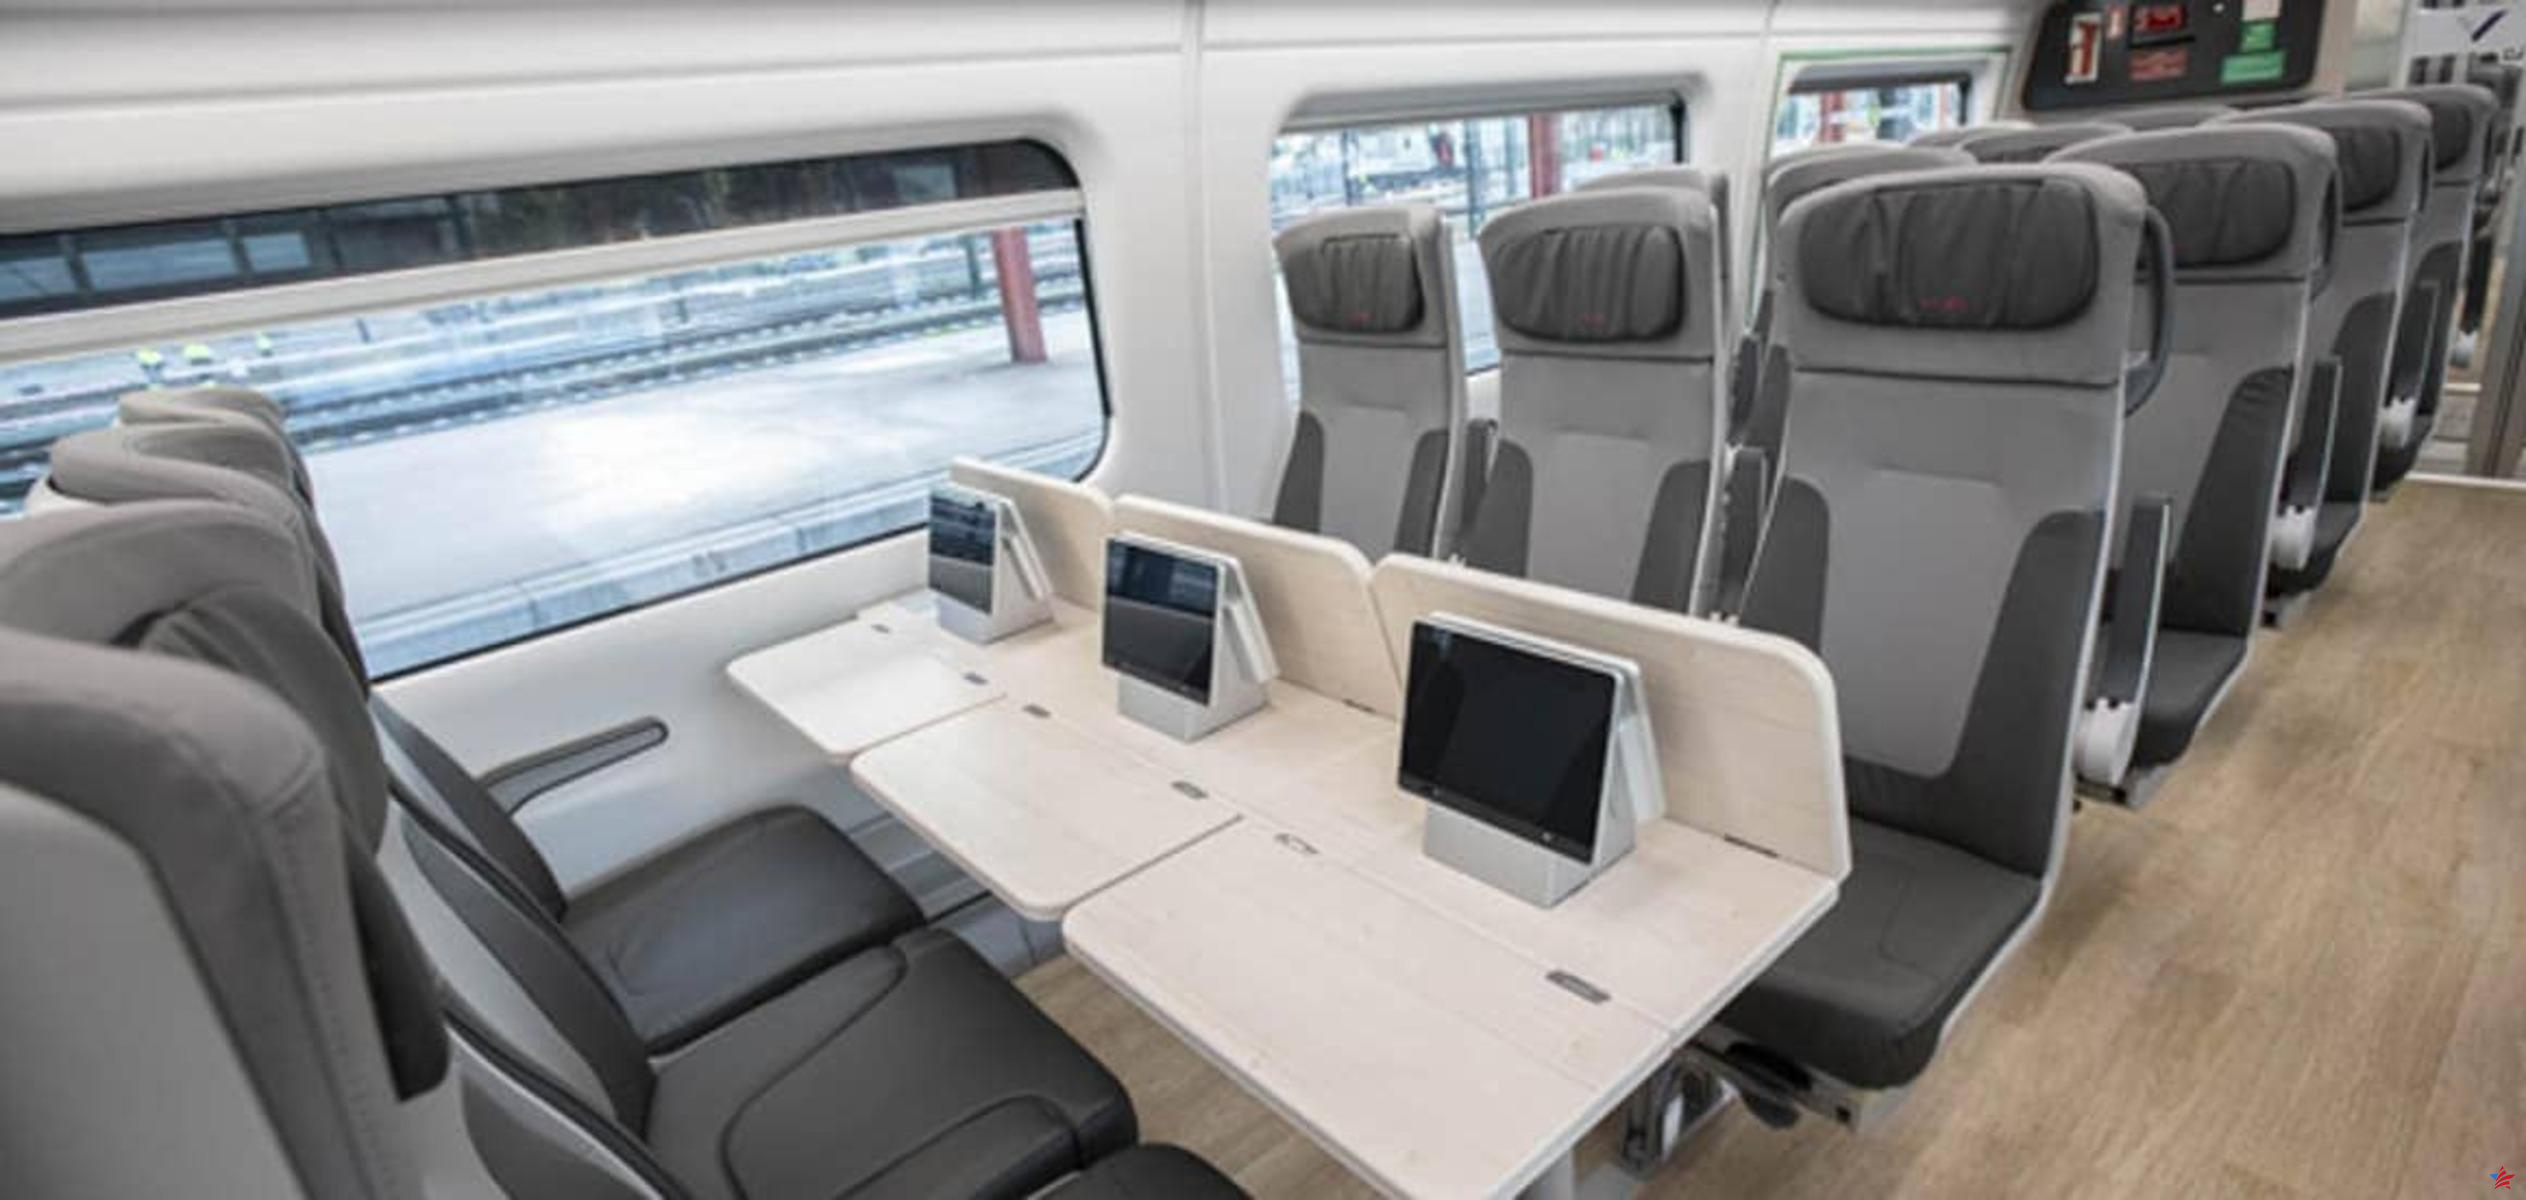 Una empresa española quiere lanzar TGV equipados con pantallas táctiles para sus viajes en Francia